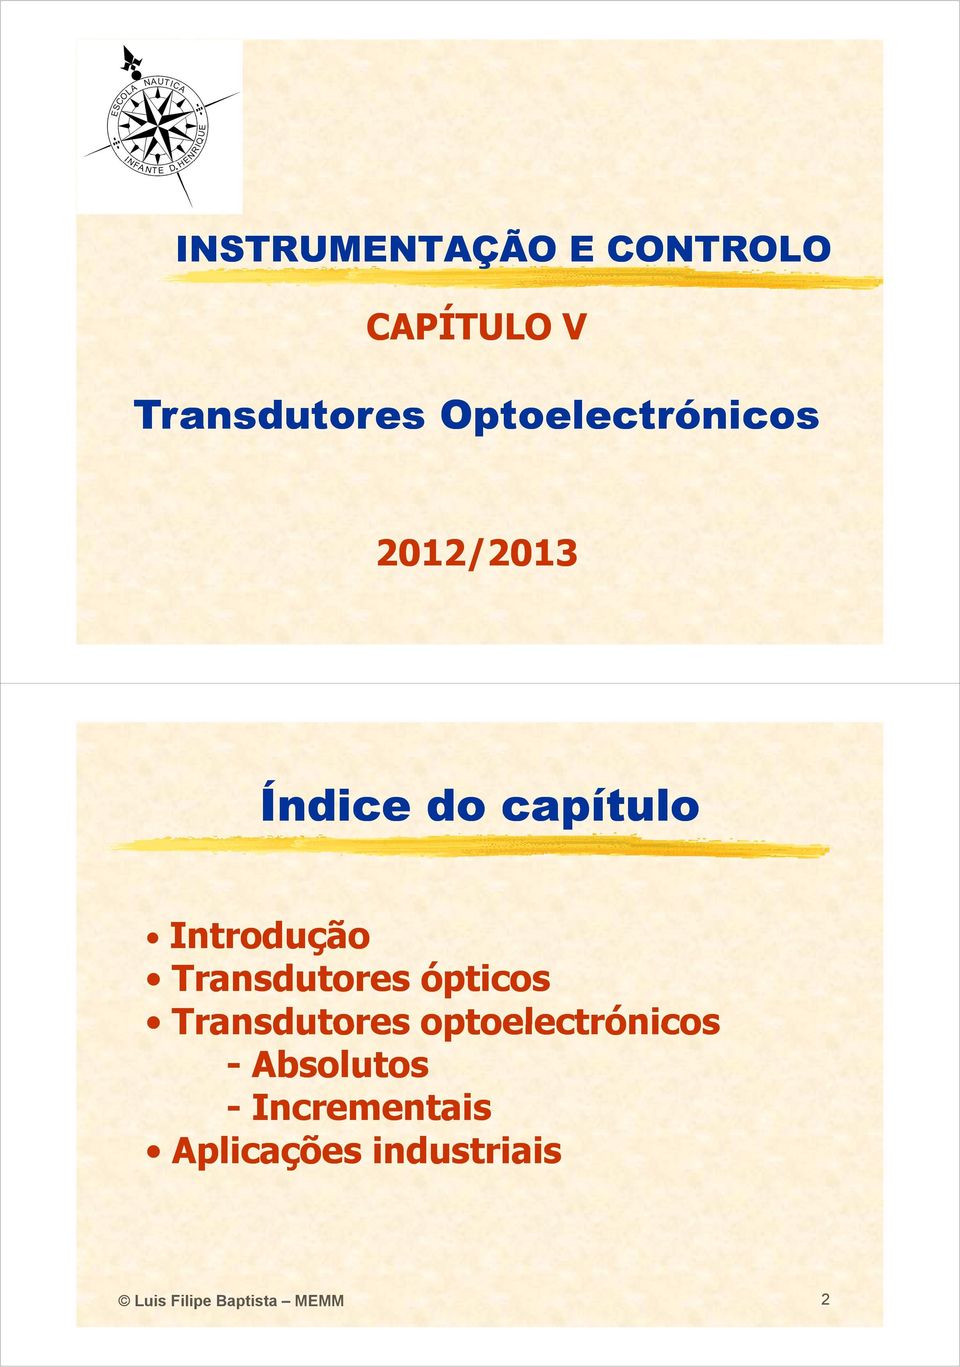 Transdutores ópticos Transdutores optoelectrónicos -